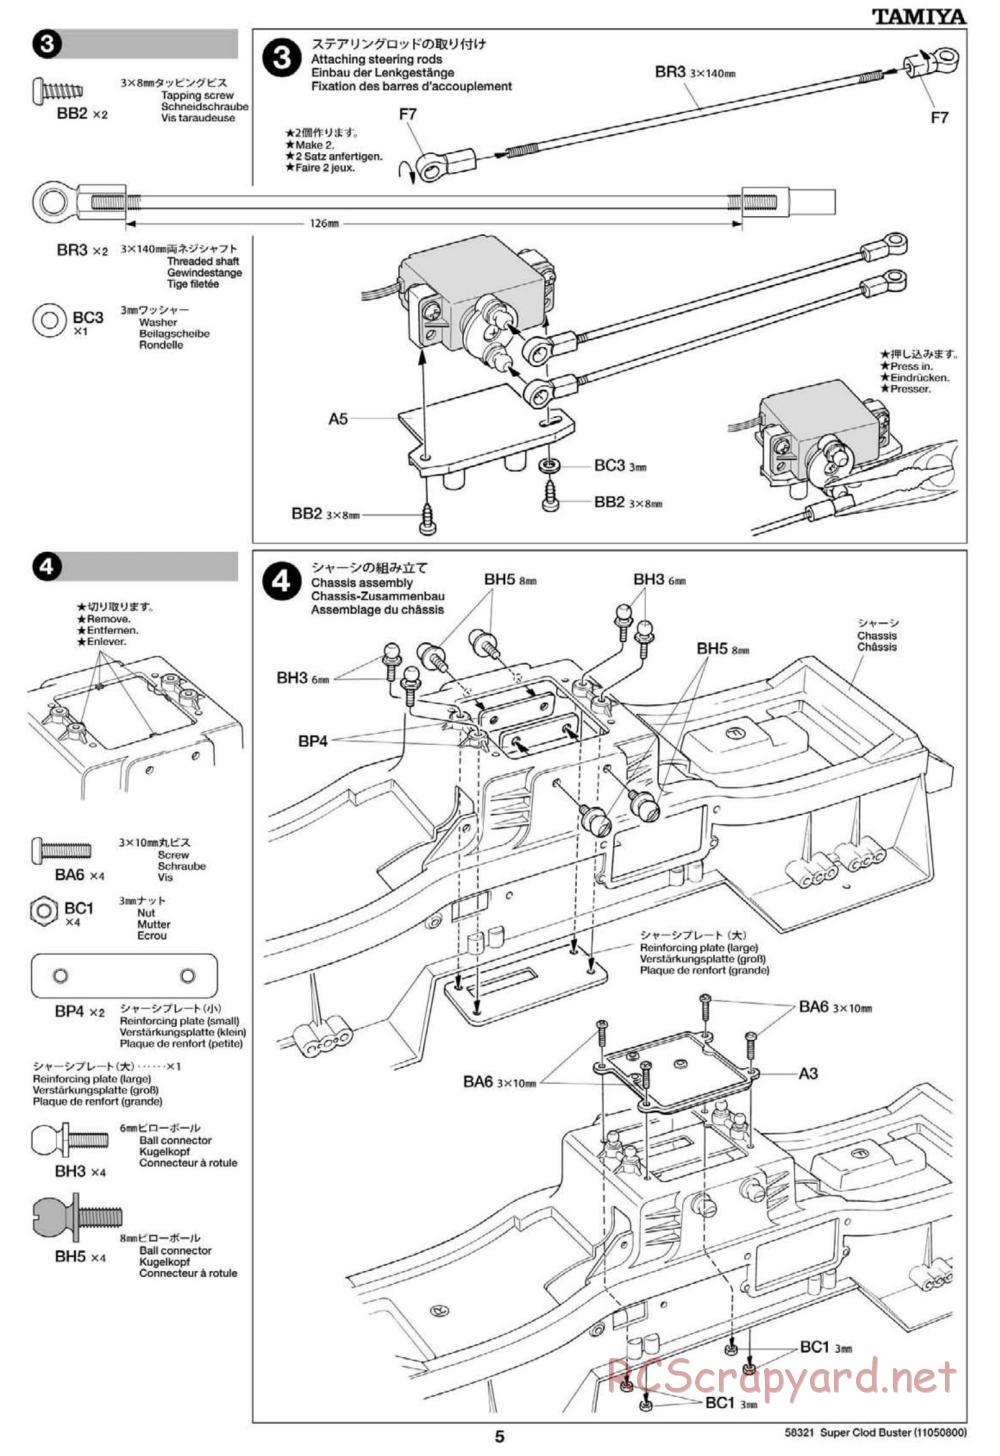 Tamiya - Super Clod Buster Chassis - Manual - Page 5